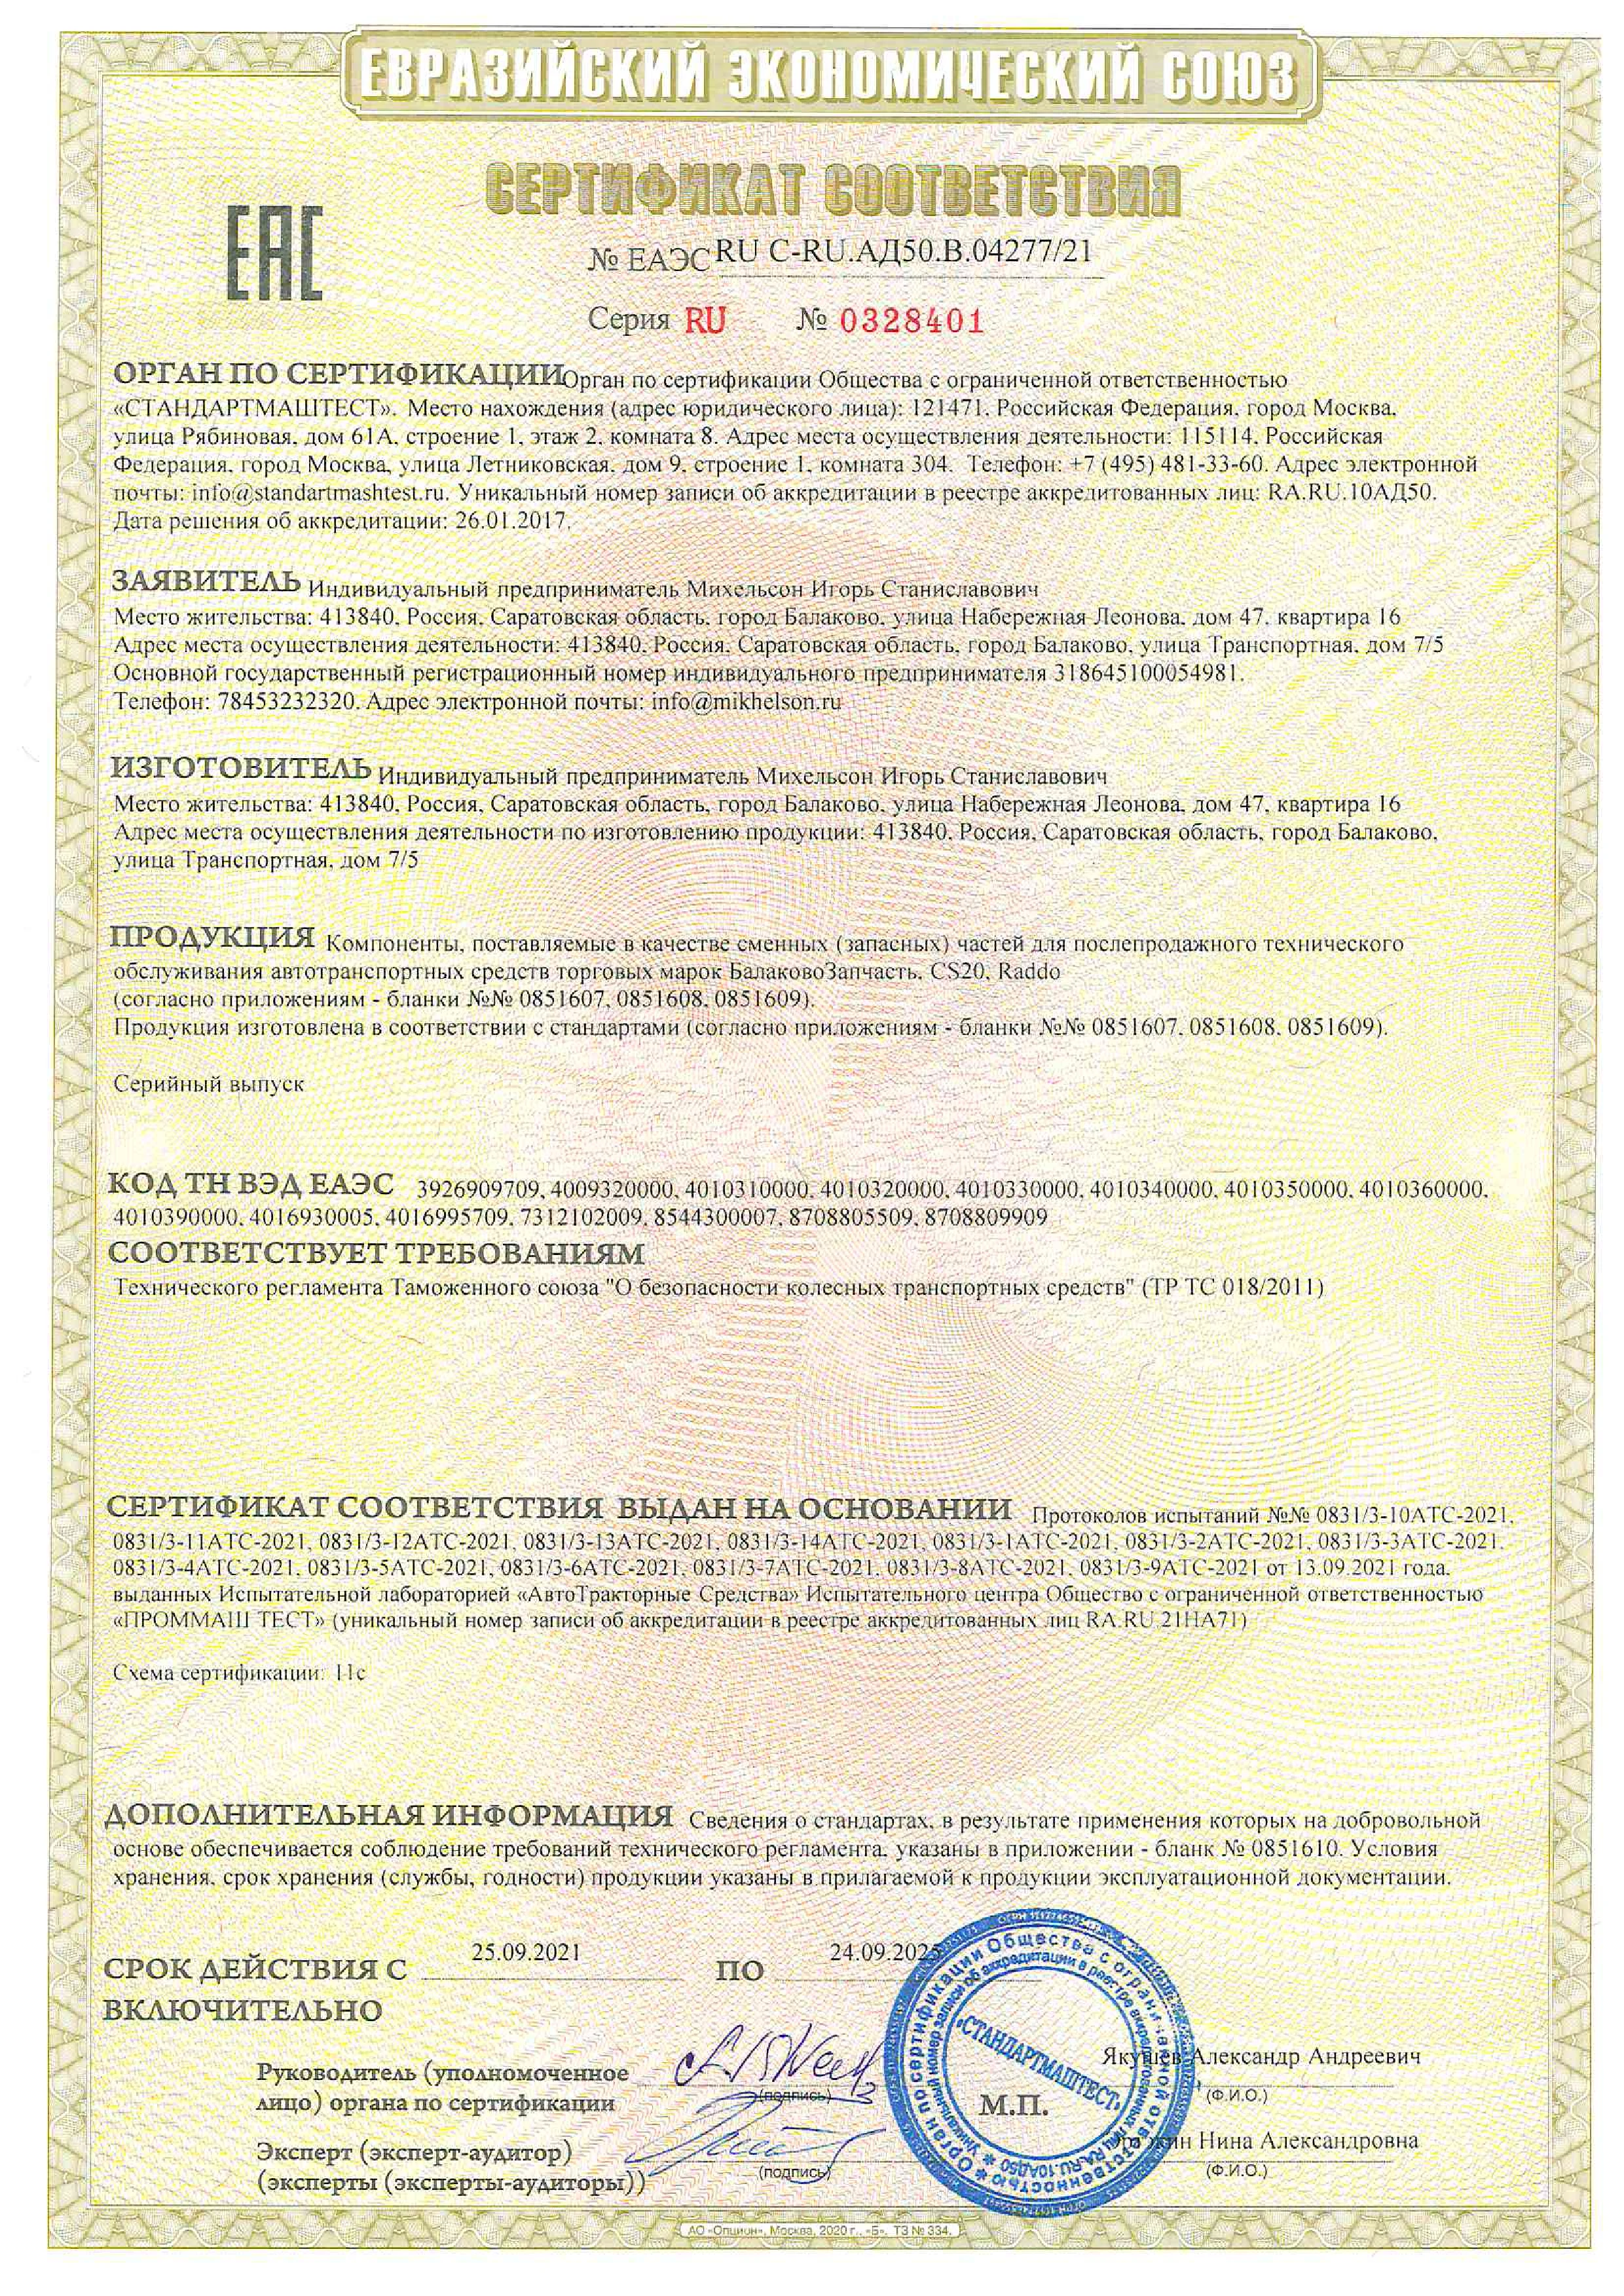 Сертификат соответствия на призводство автозапчастей